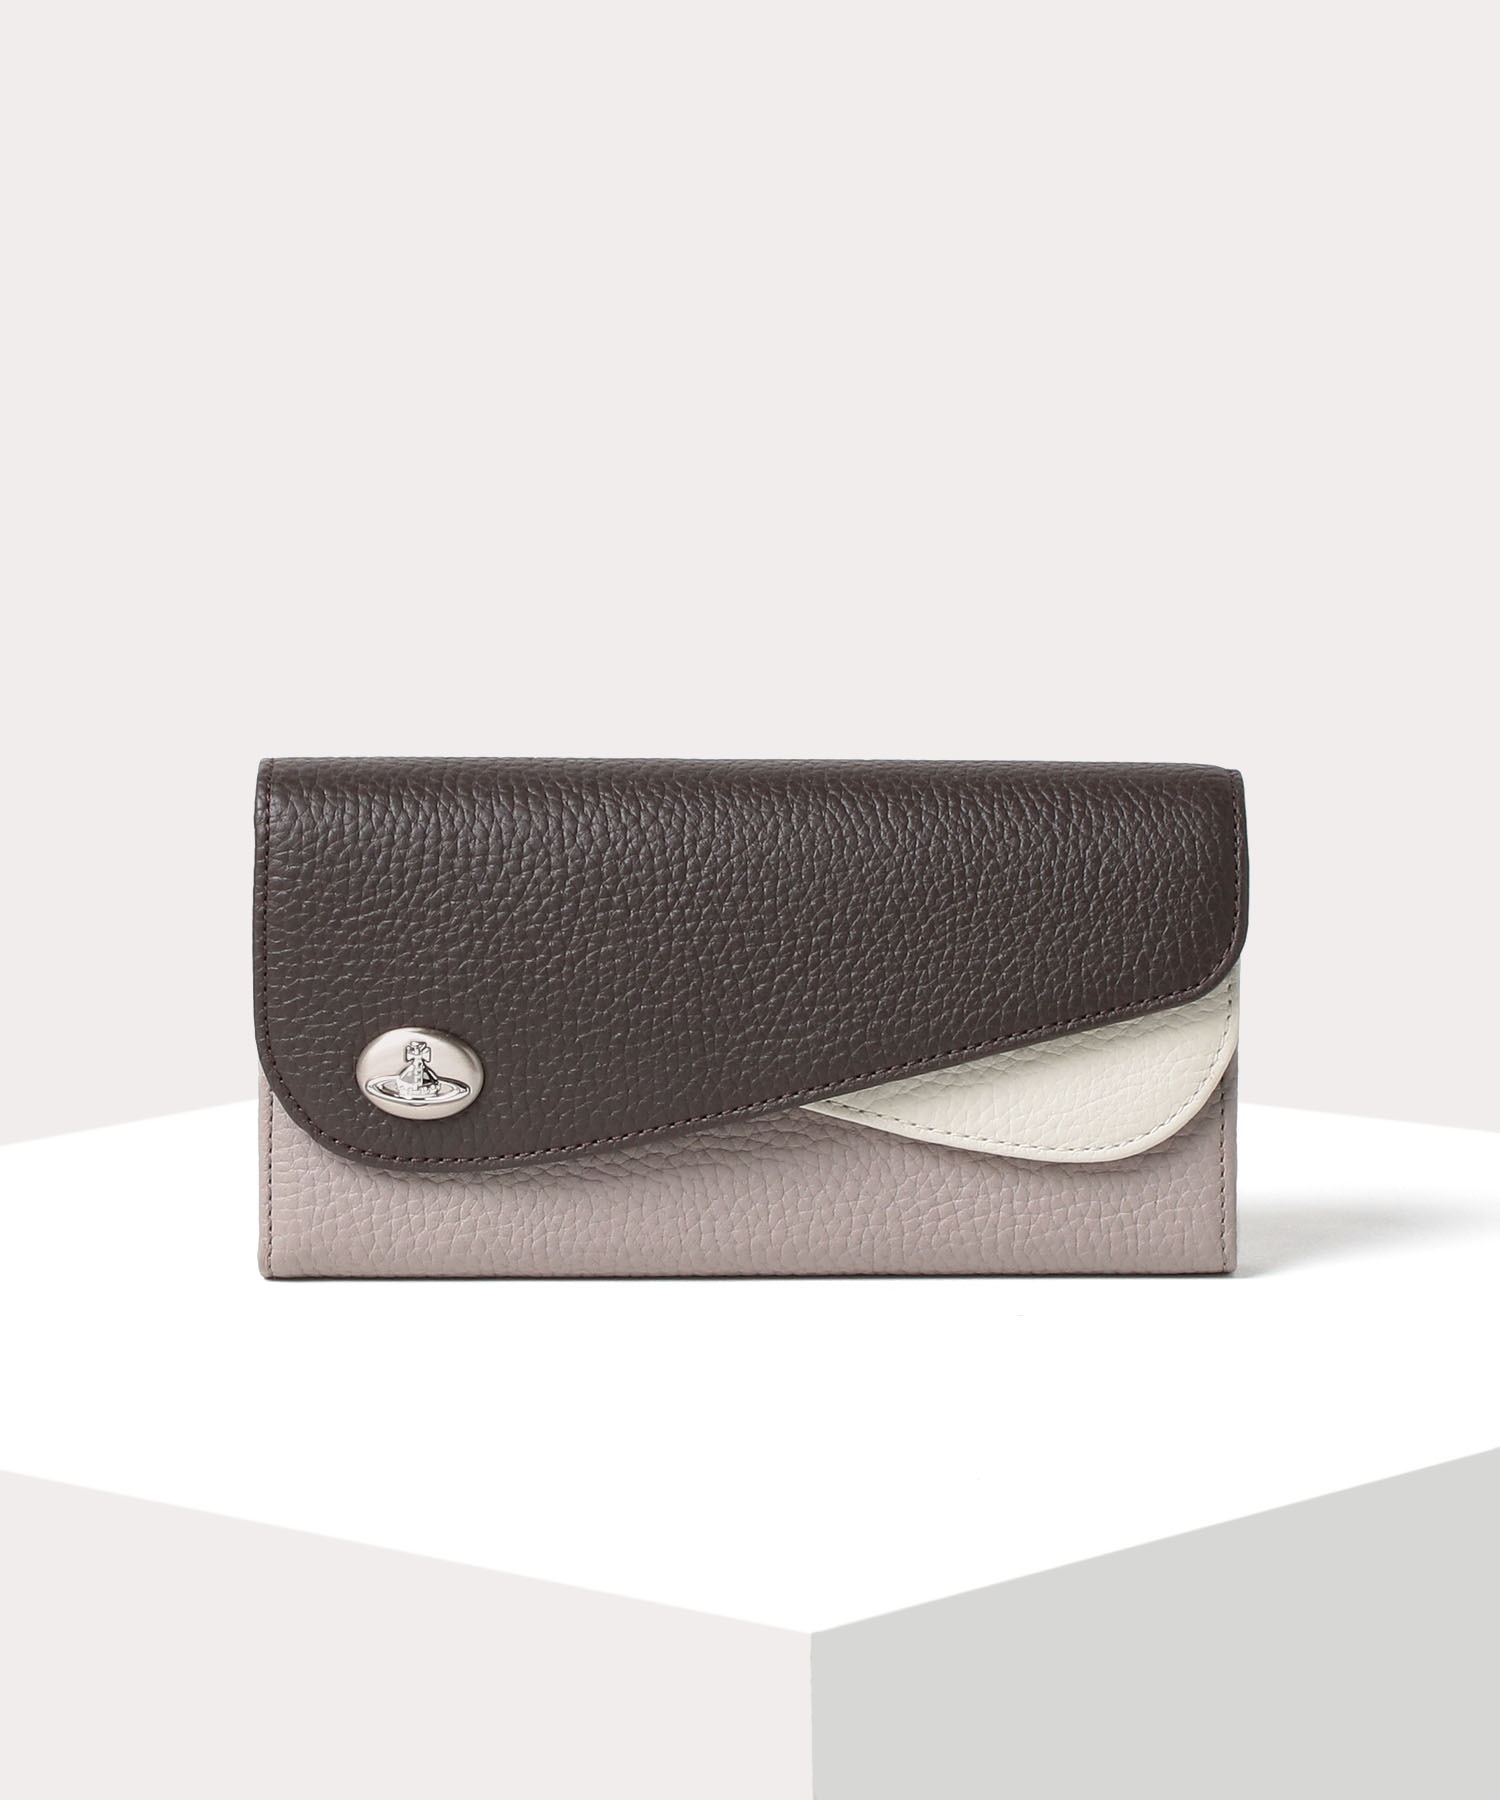 40代女性に人気の財布はVivienne Westwoodの ダブルフラップ 長財布です